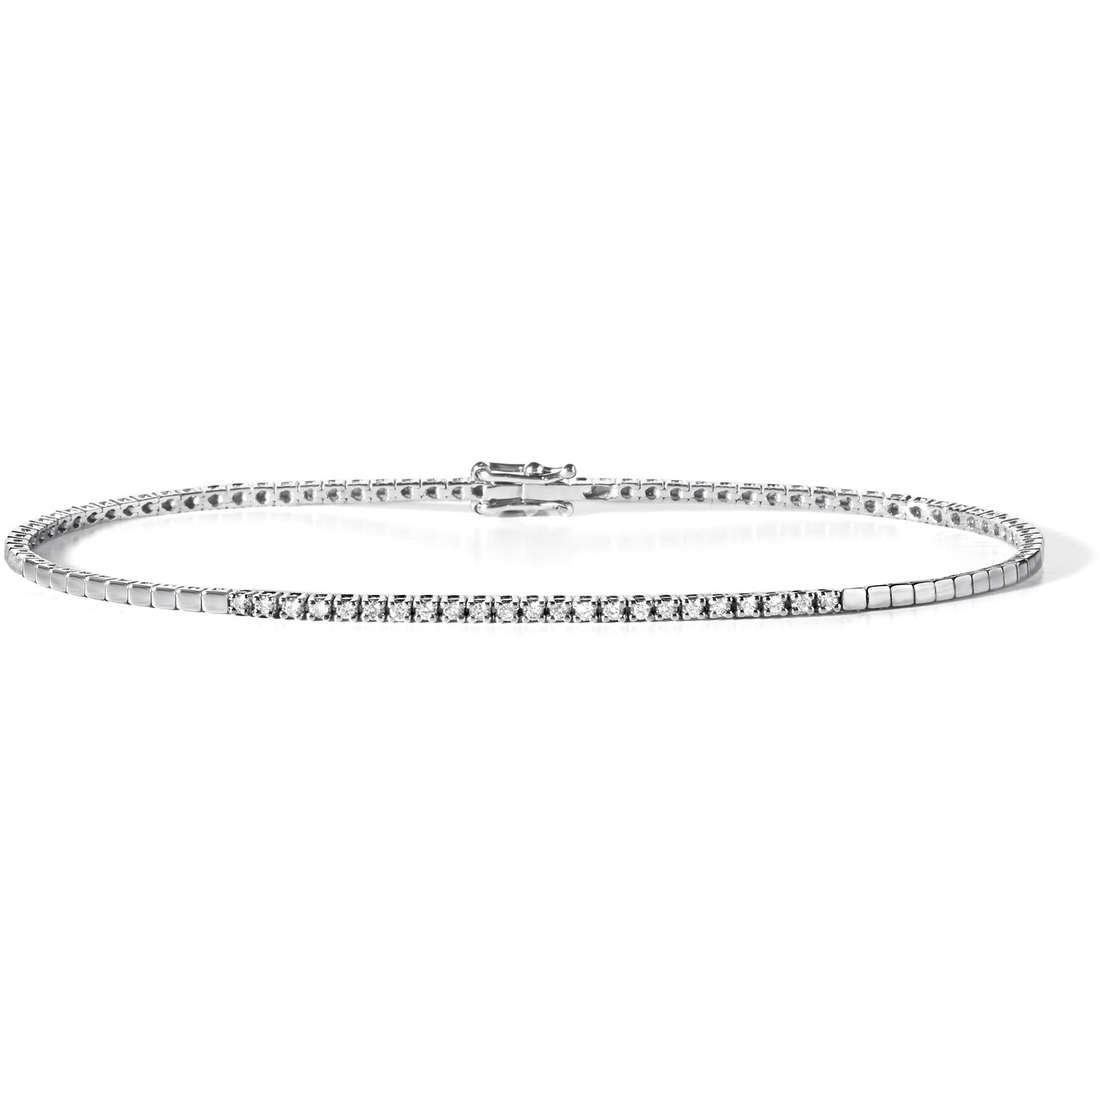 Men’s Bracelet Tennis Jewelry UBR 558 M20